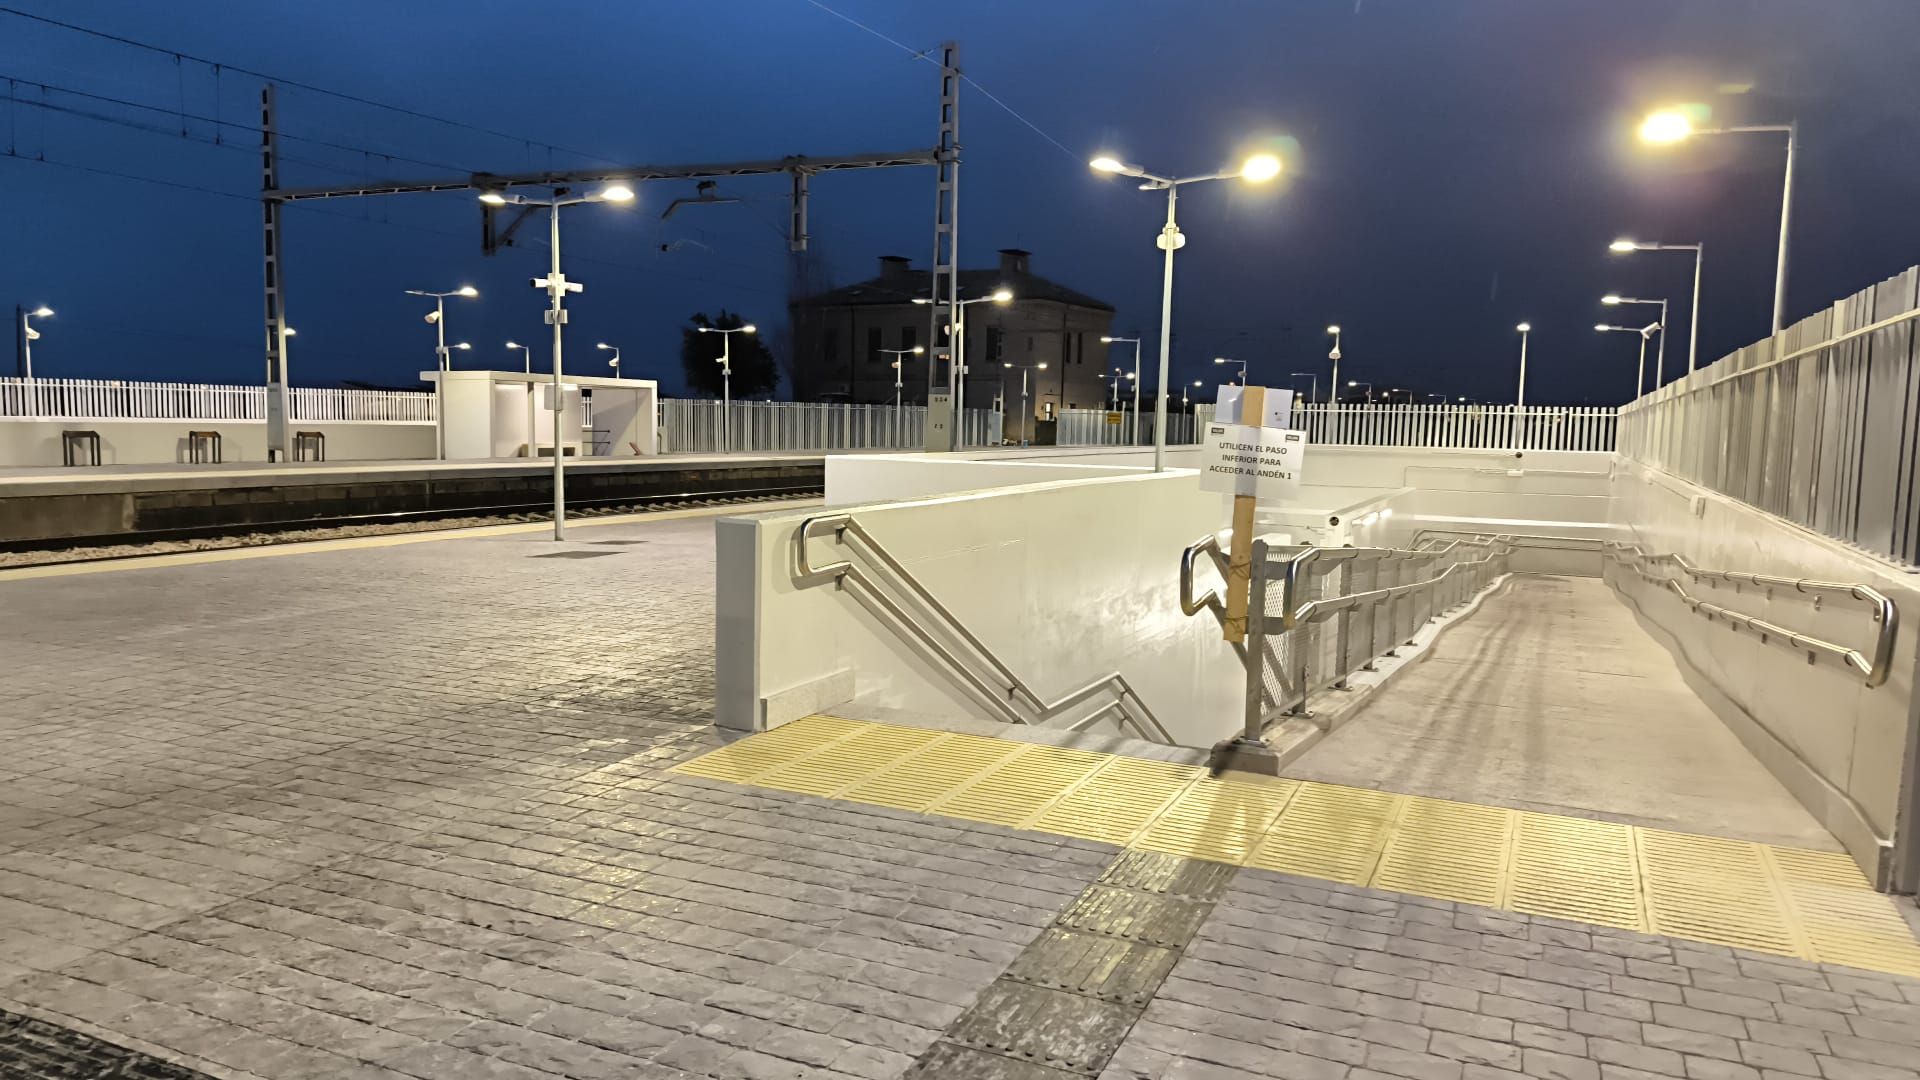 En imágenes | Las nuevas instalaciones en la estación de tren de Gallur